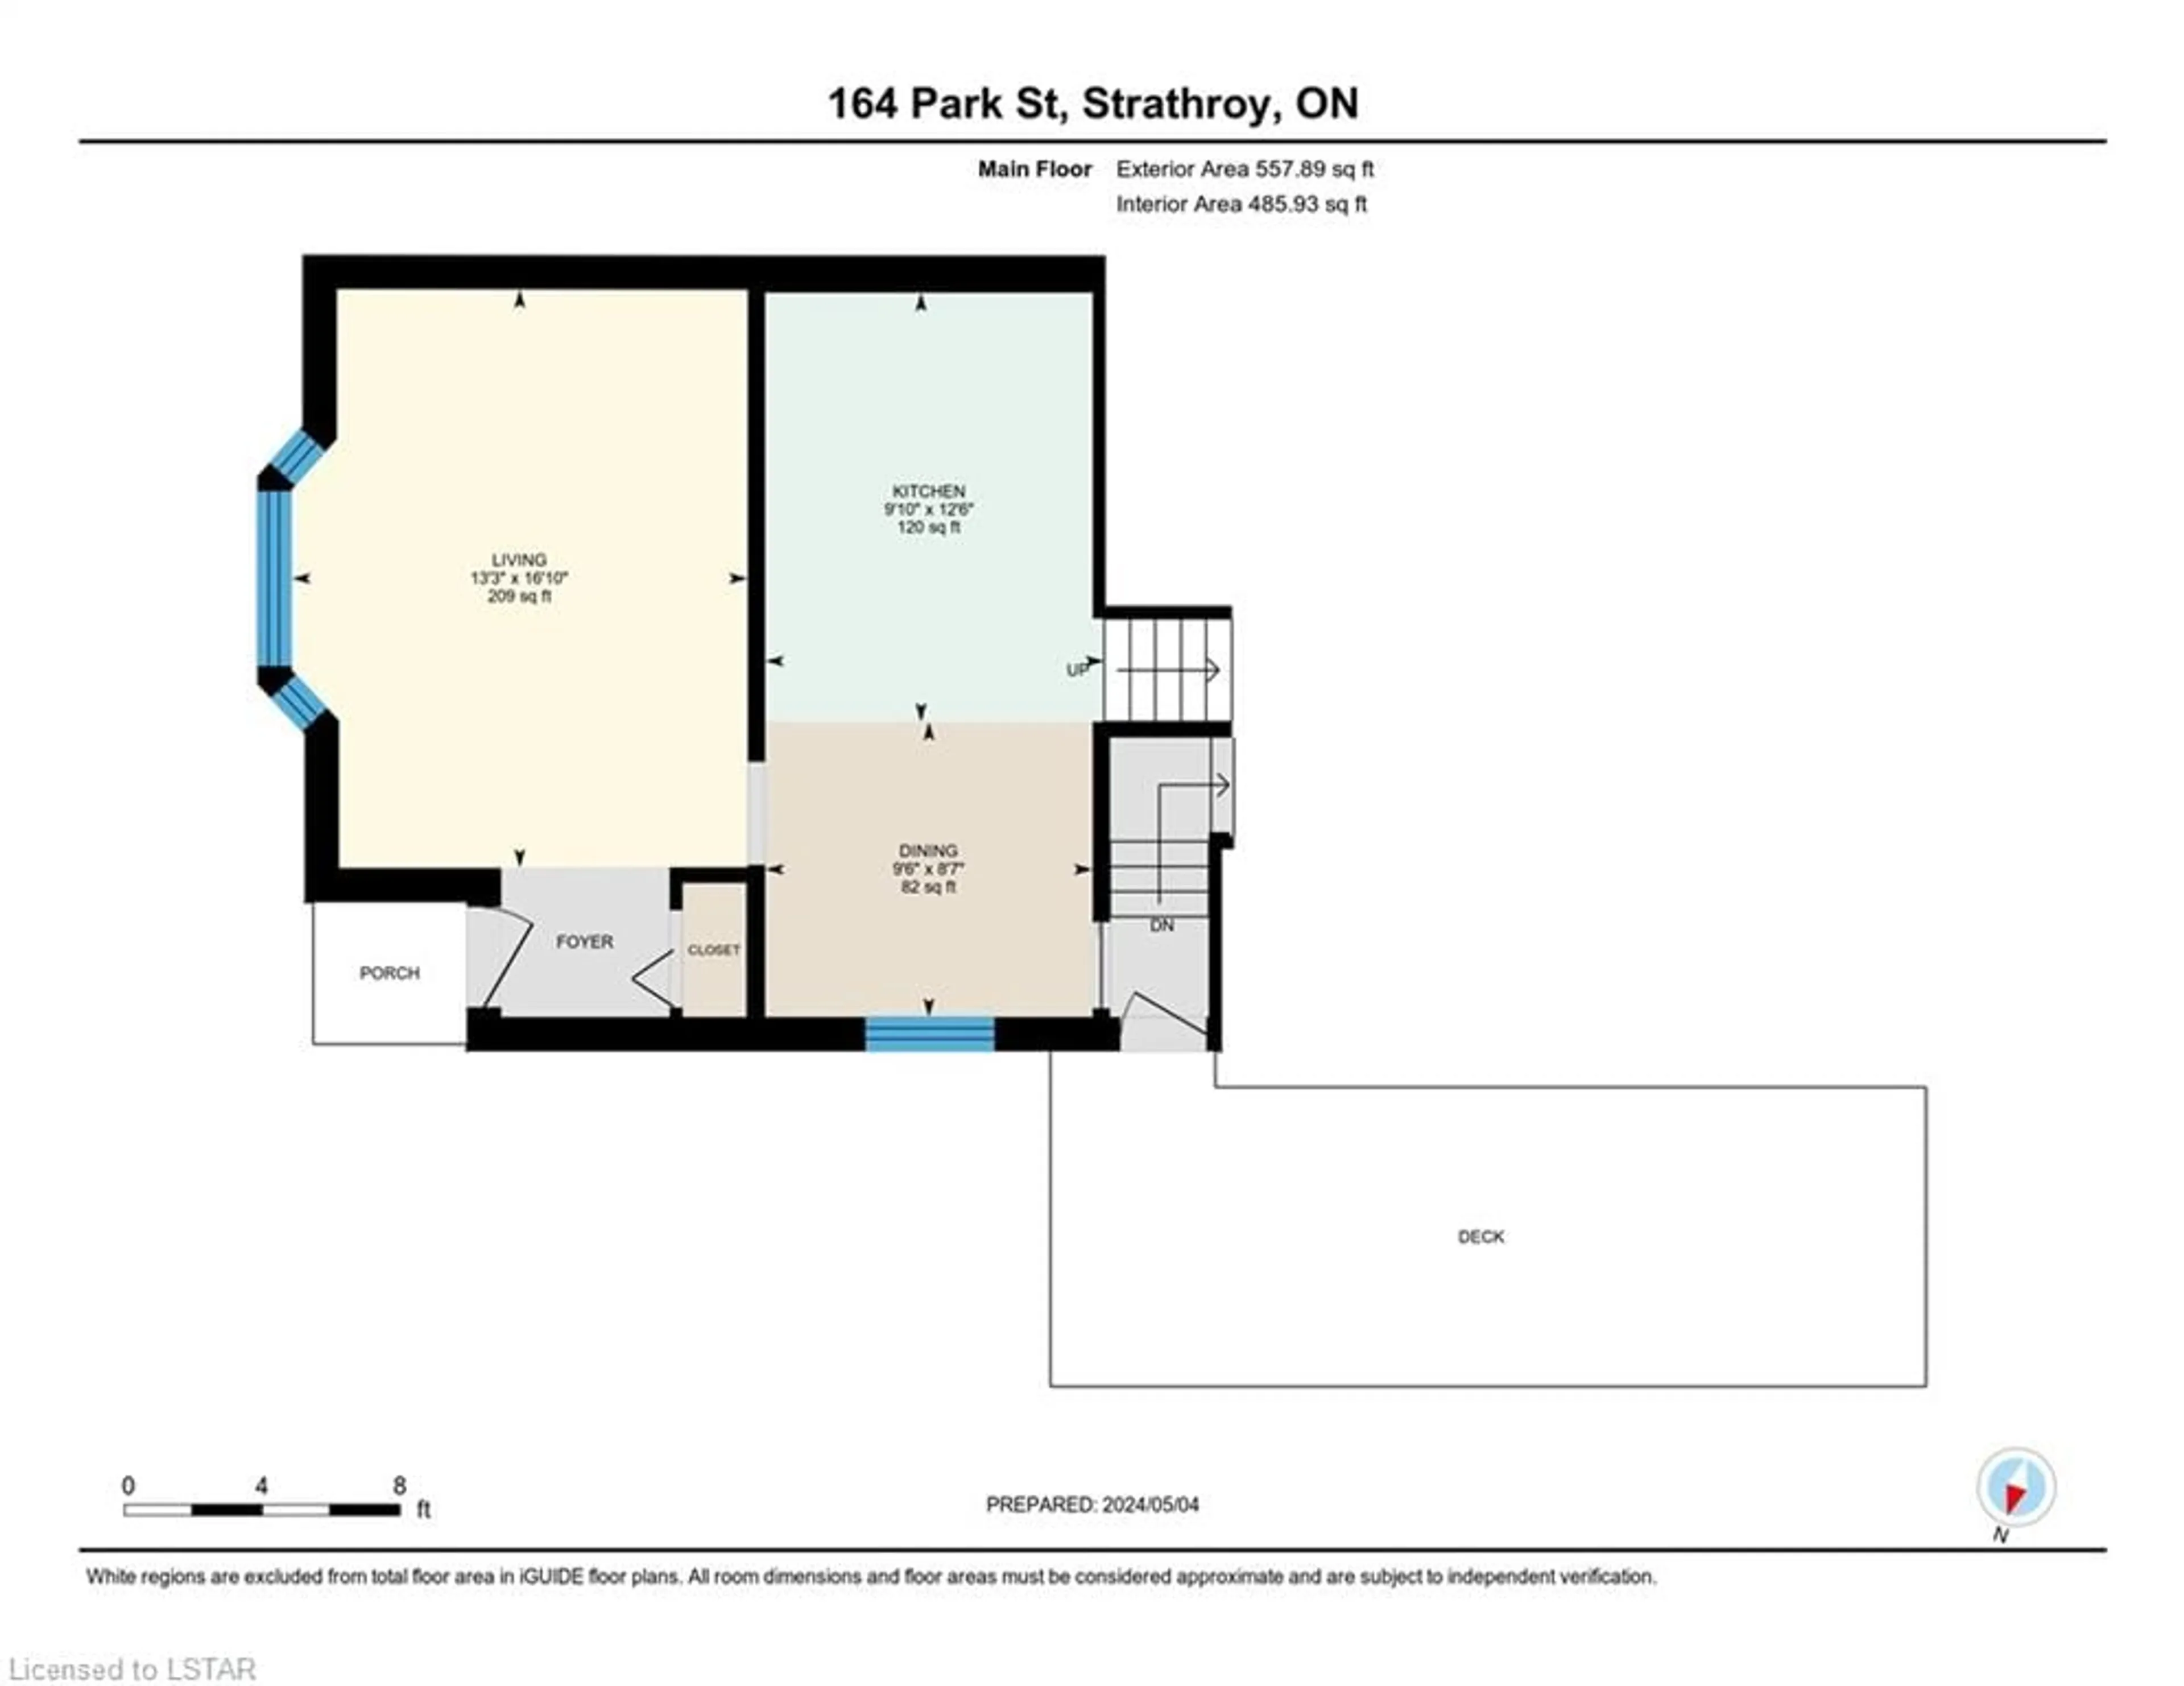 Floor plan for 164 Park St, Strathroy Ontario N7G 3V8